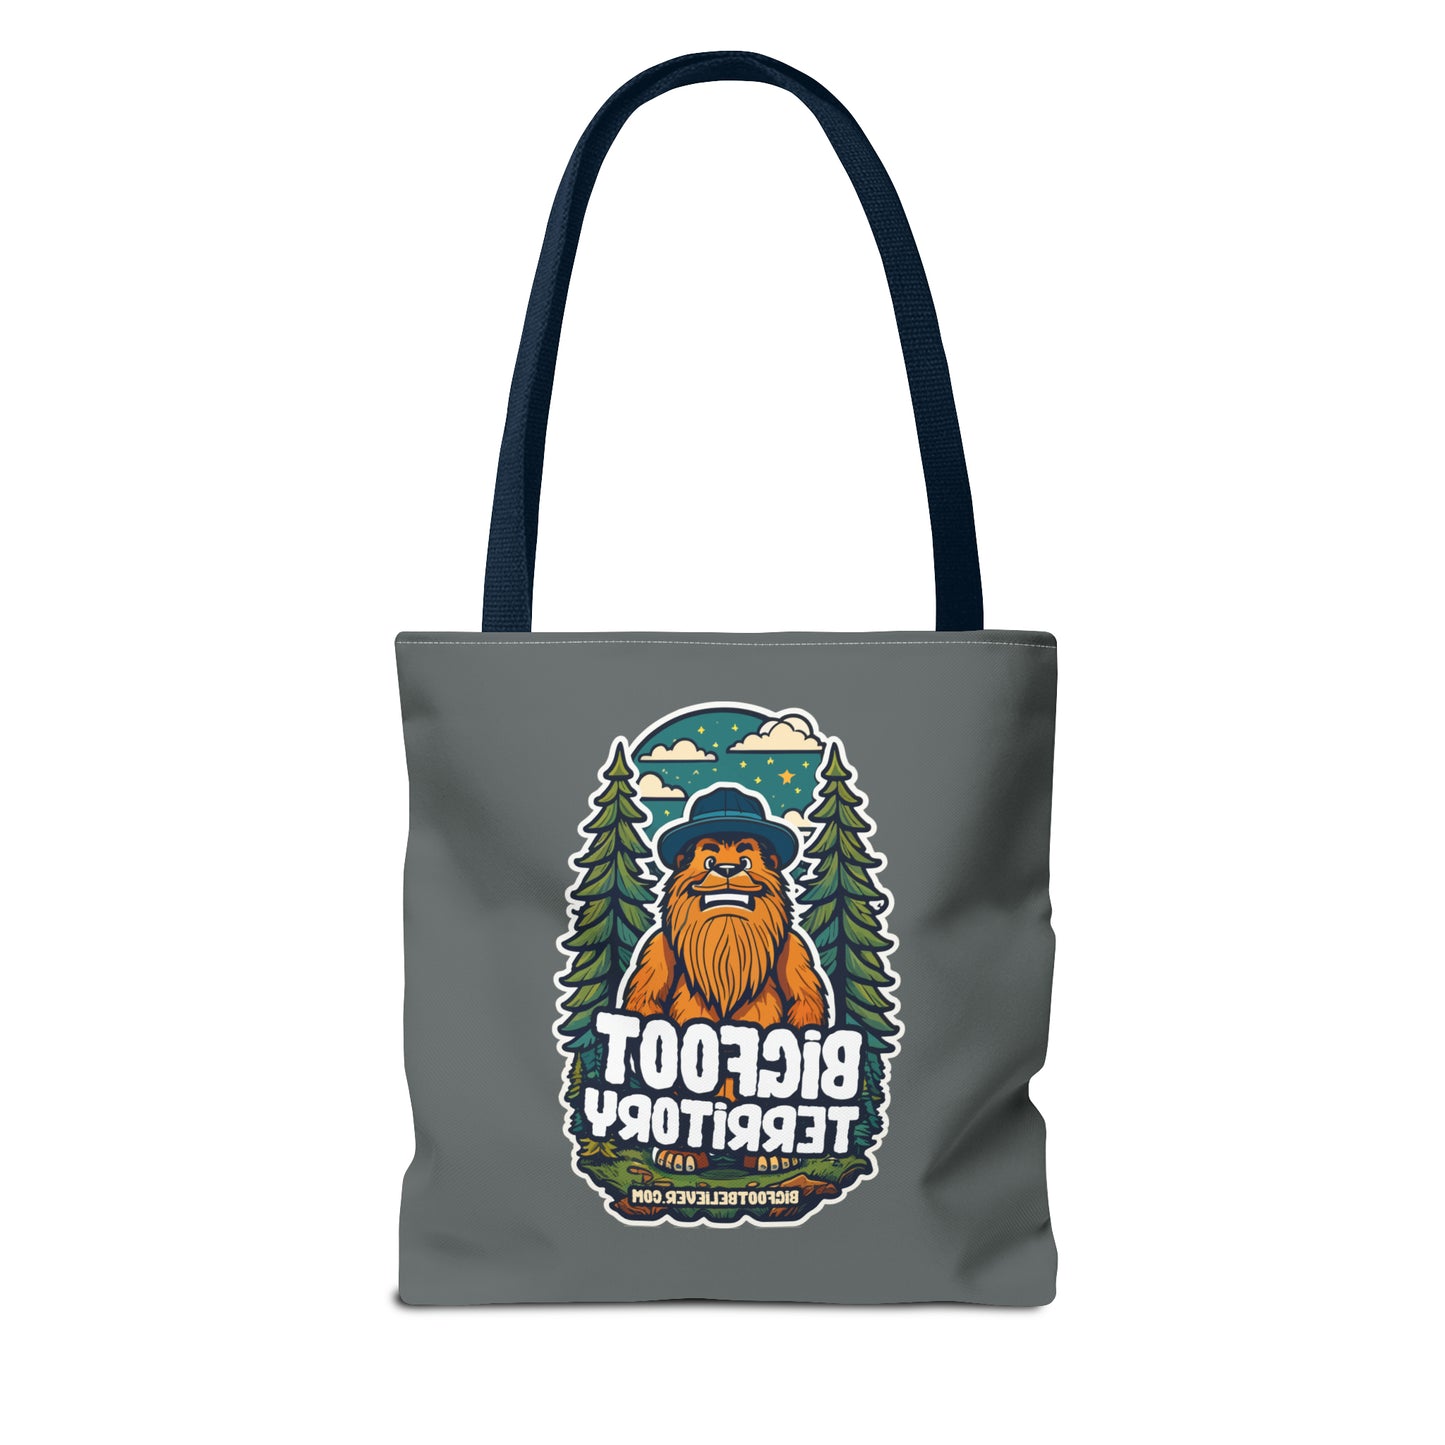 Bigfoot Territory ll Grey Tote Bag (AOP)